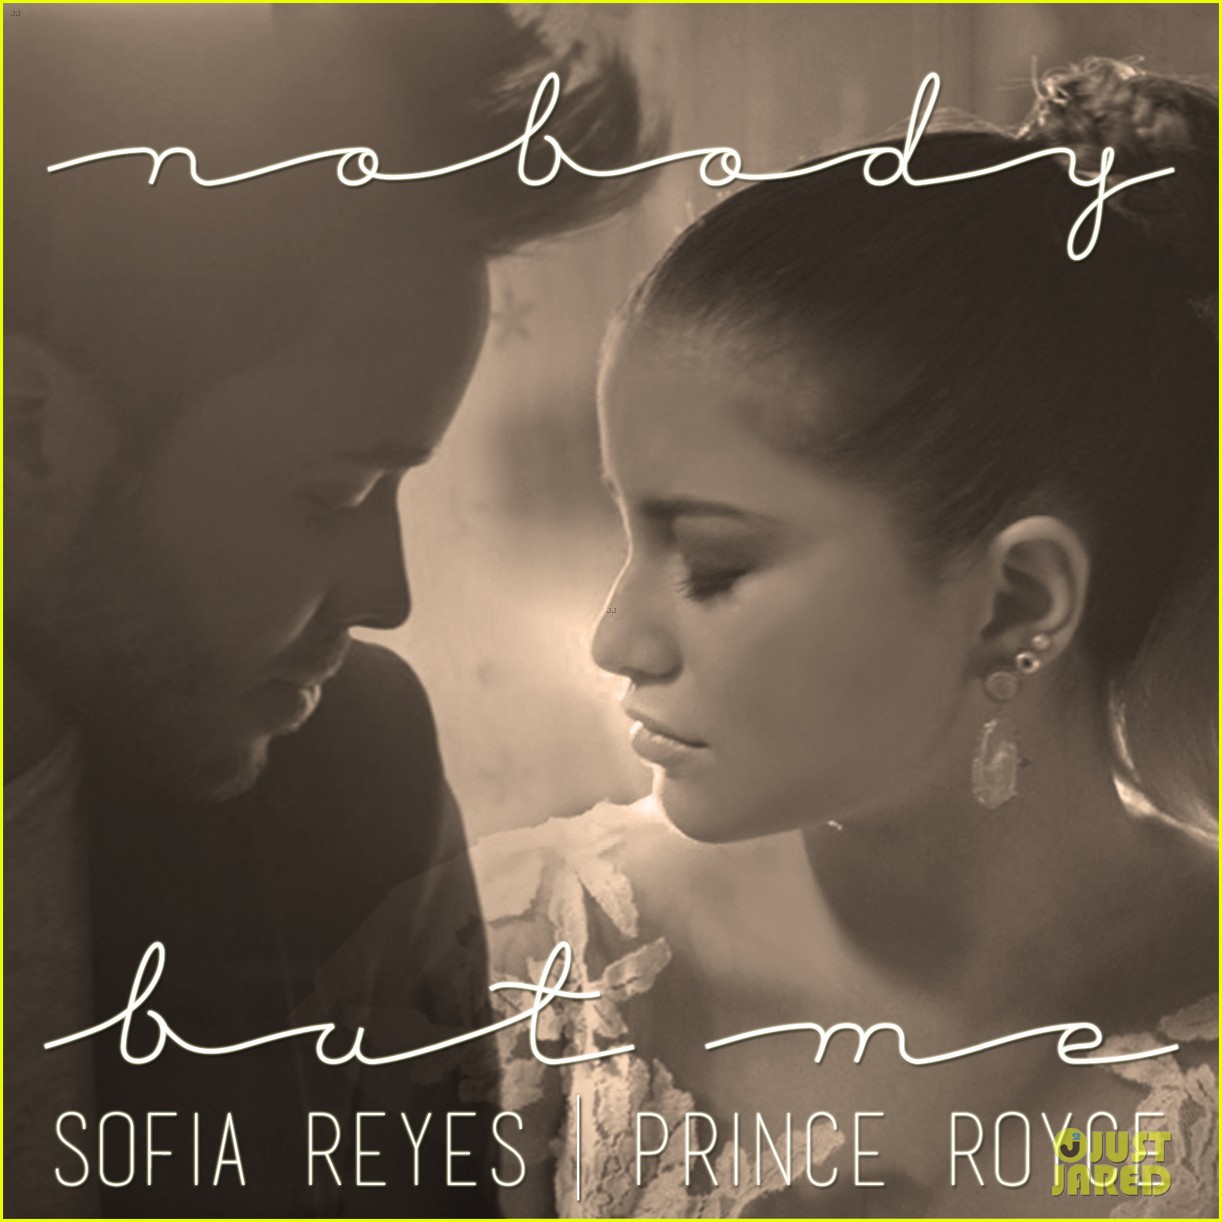 sofia reyes nobody to love prince royce video 01